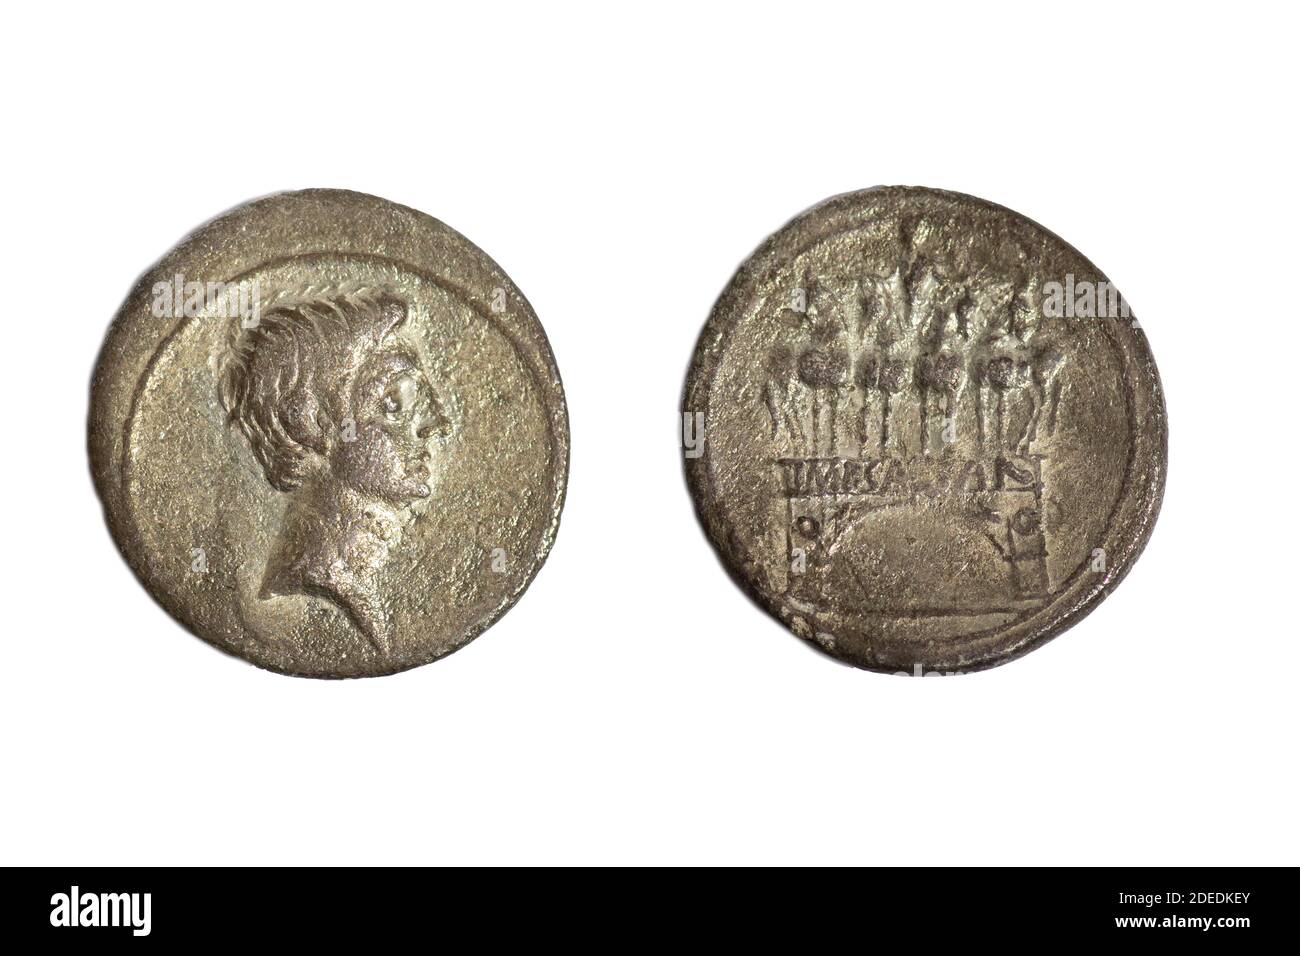 Old ancient coin AR Silver Denarius Emperor Octavian Augustus Roman (reverse side) Victory Arch emperor on chariot 30 -29 BC Stock Photo